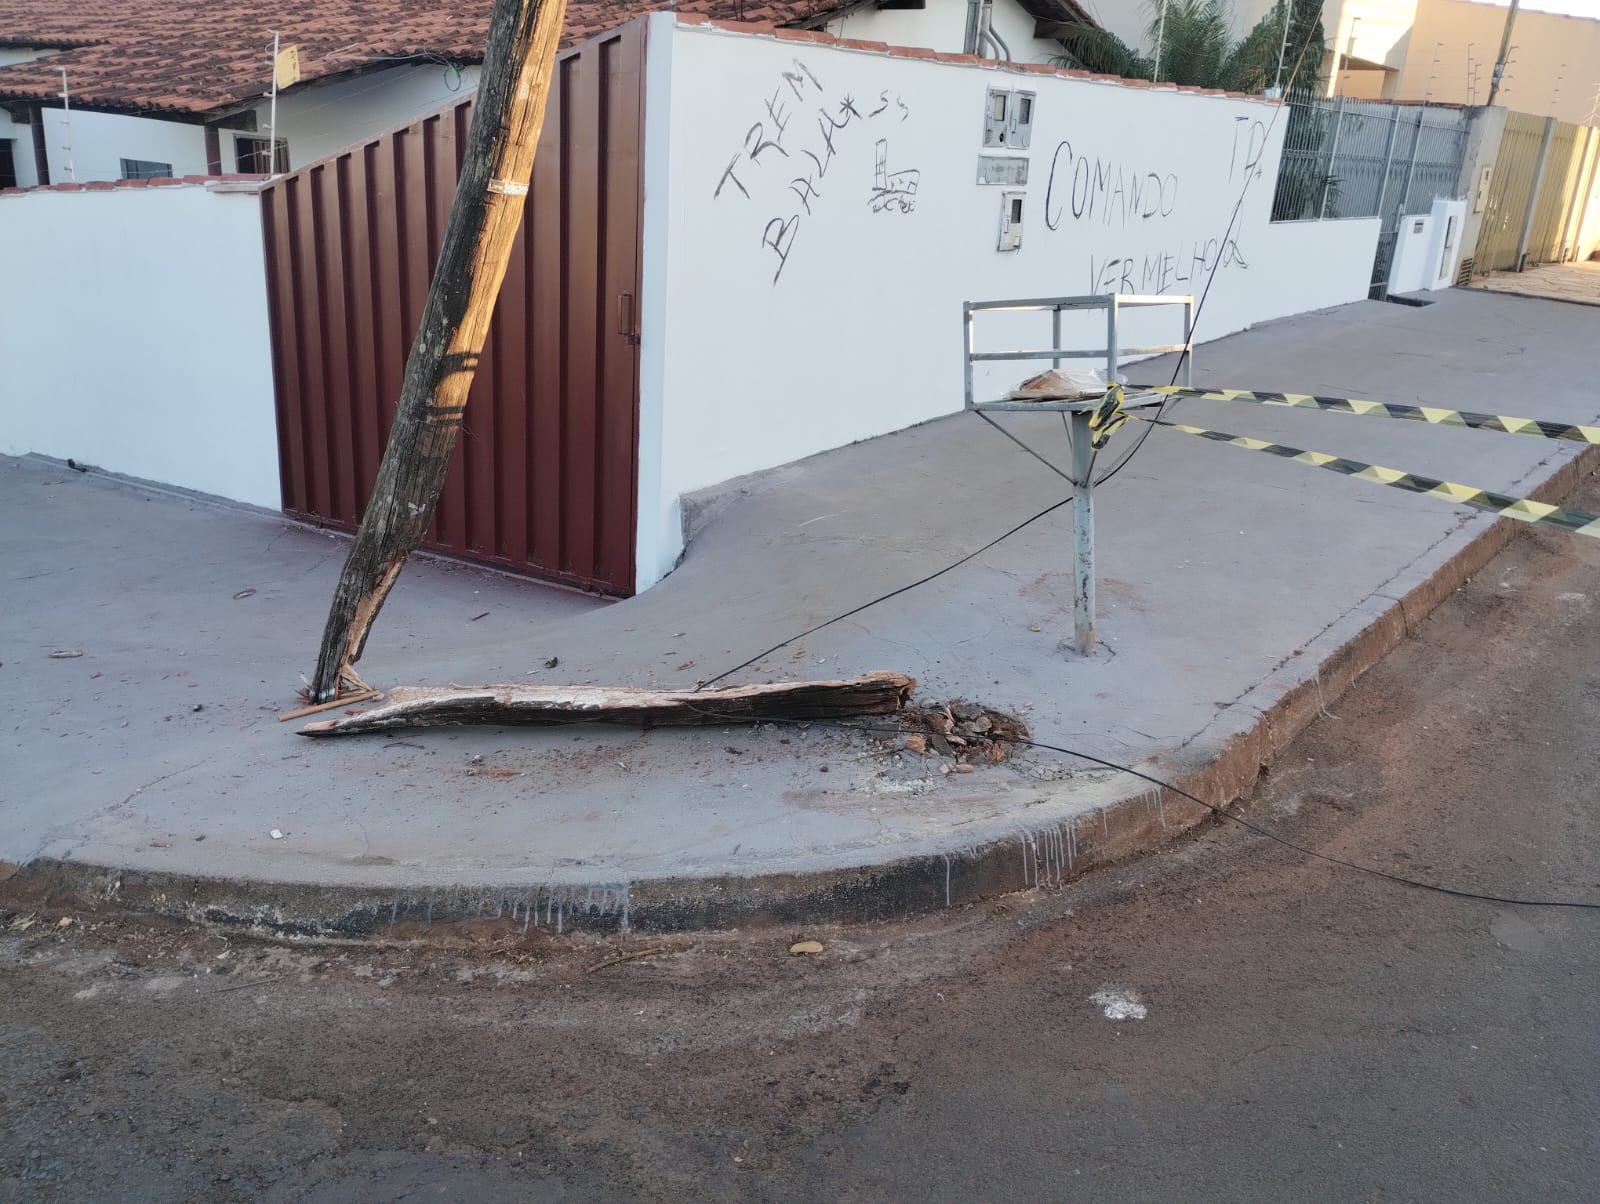 Rua fica interditada após caminhão danificar poste de energia em Rio Verde